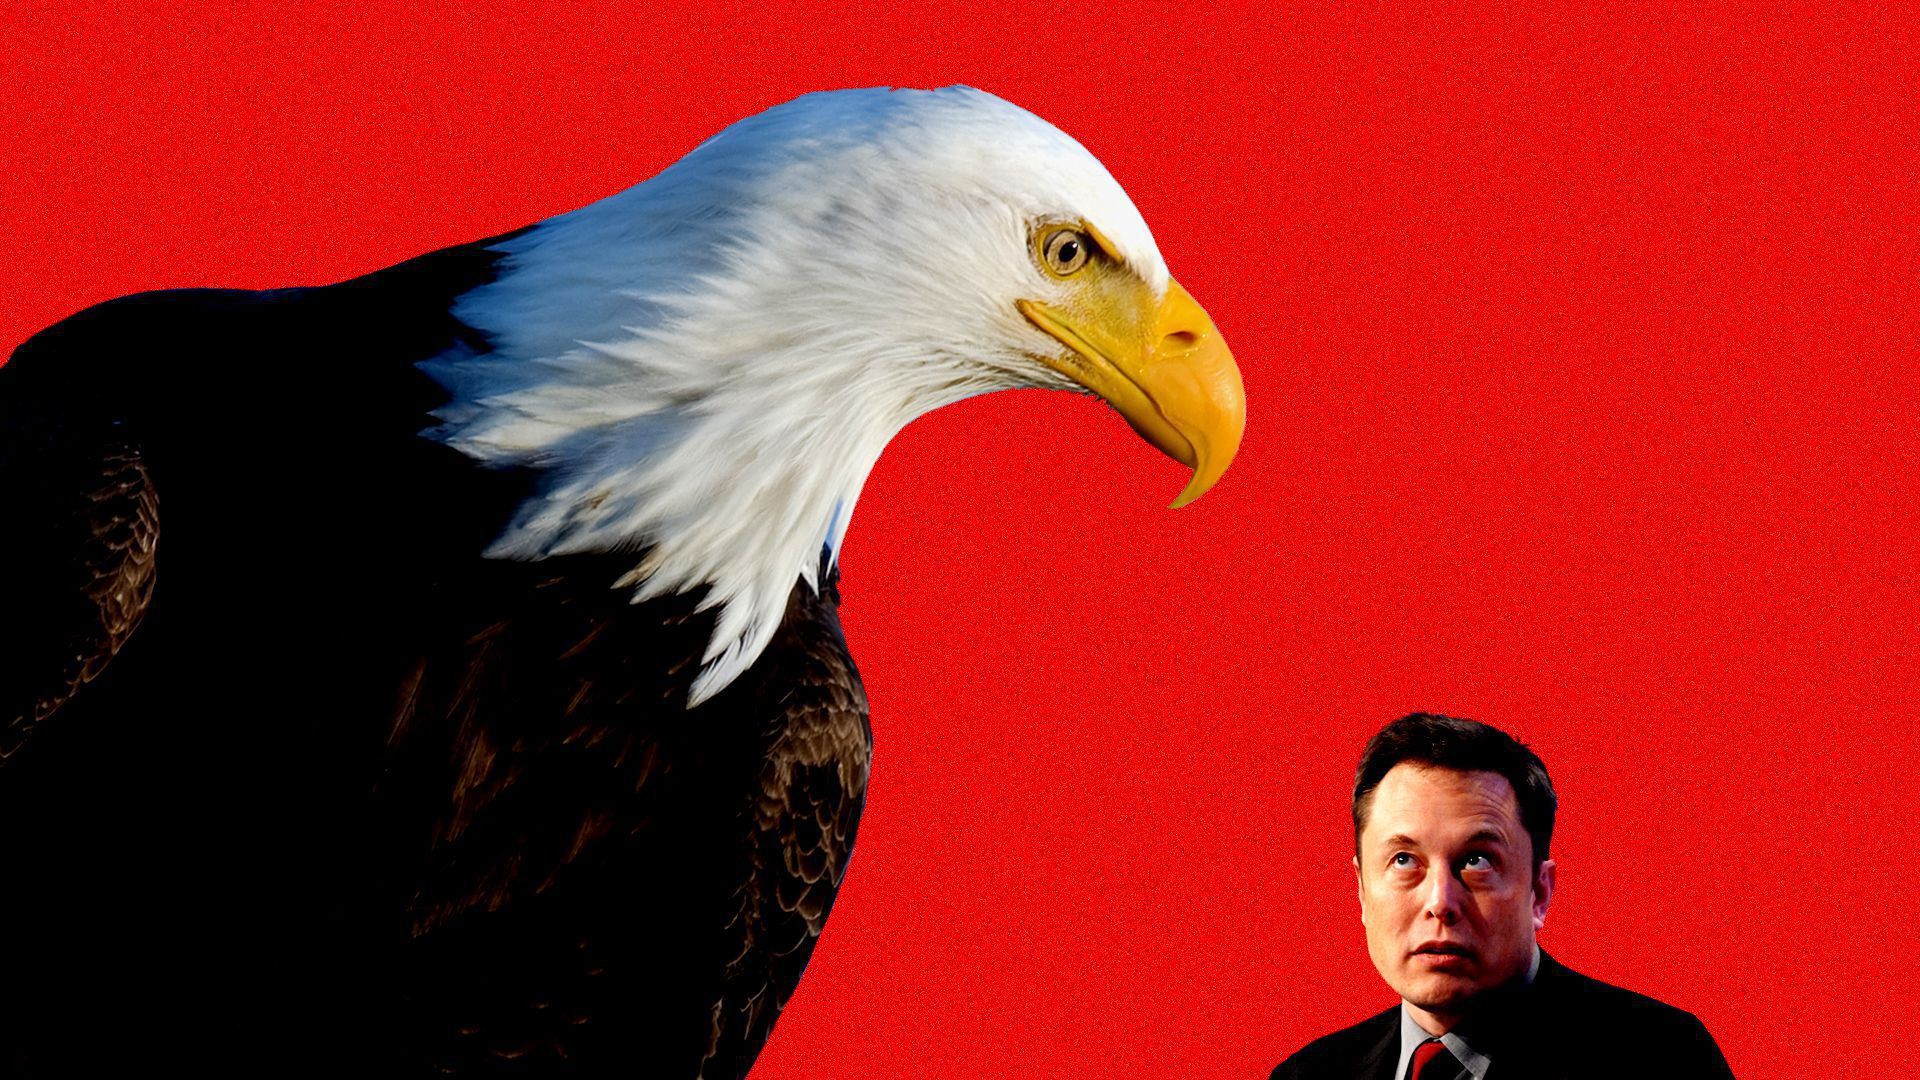 A bald eagle and Elon Musk